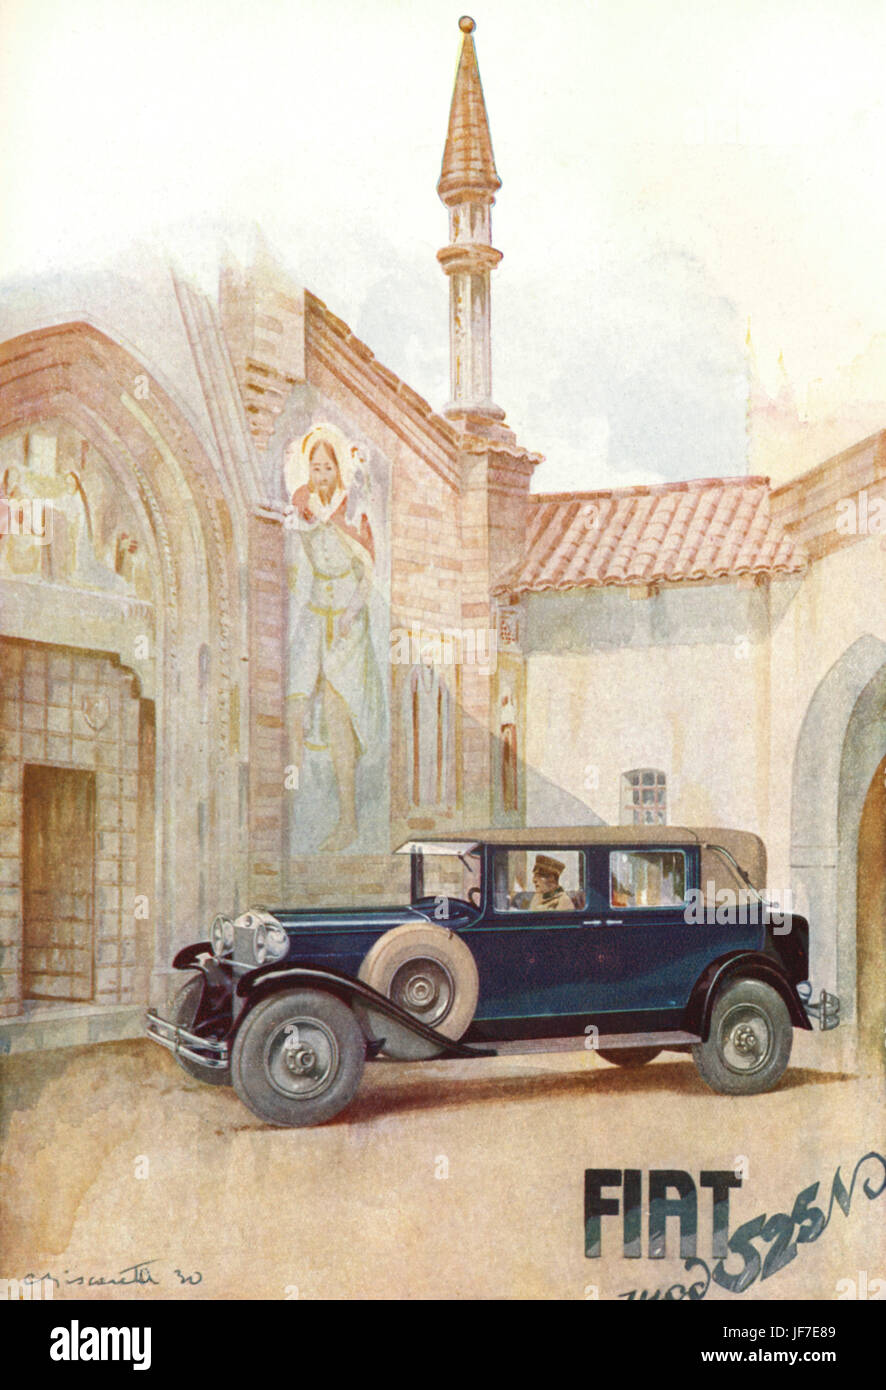 Pubblicità per la Fiat. Auto , automobile con autista in uniforme in attesa nel cortile del villaggio , di fronte alla chiesa. Foto Stock